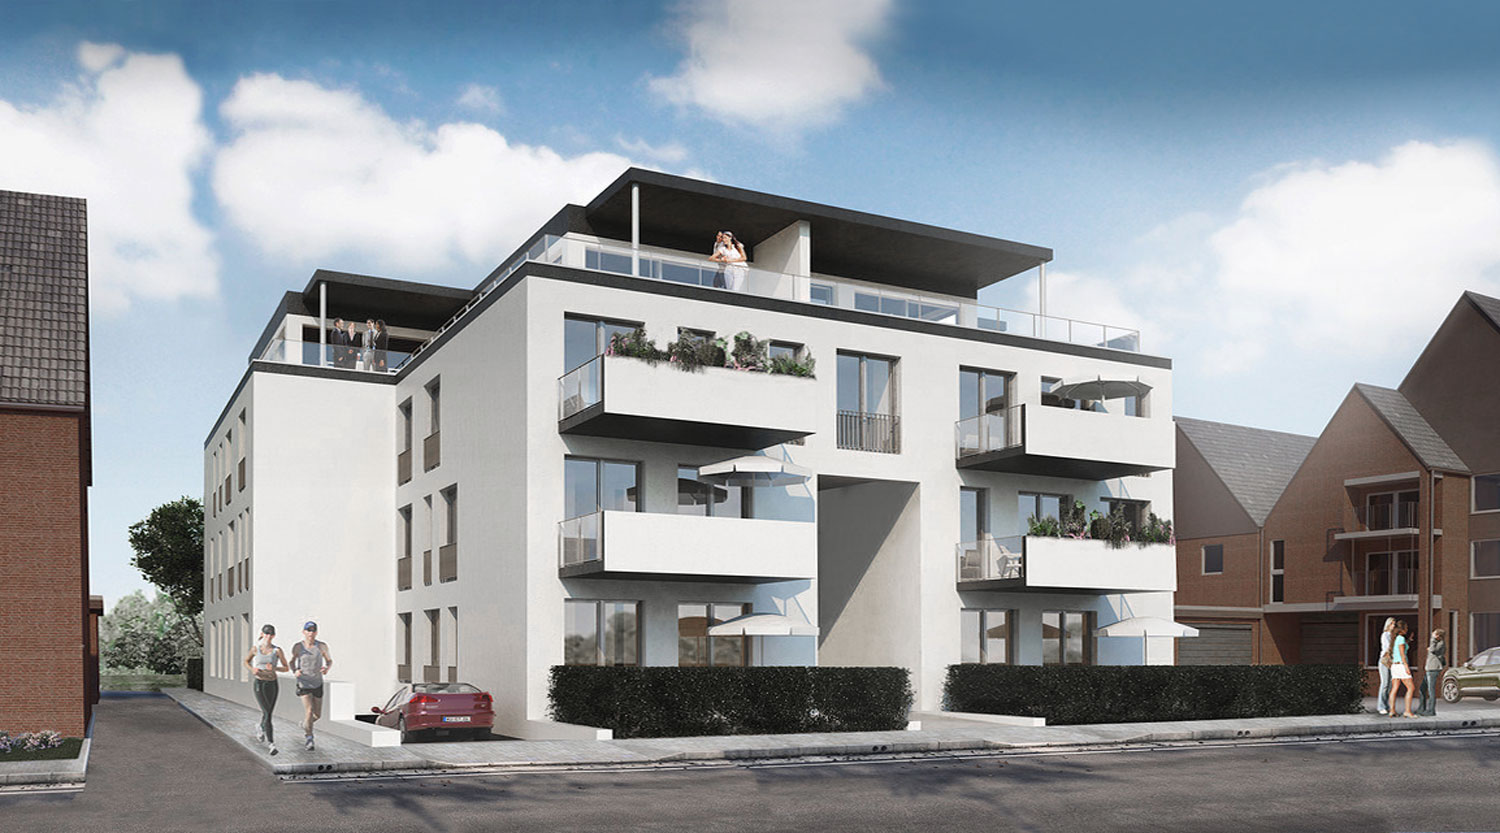 heiderich-architekten-luenen-mehrfamilienhaus-alstedderstrasse-perspektive-1